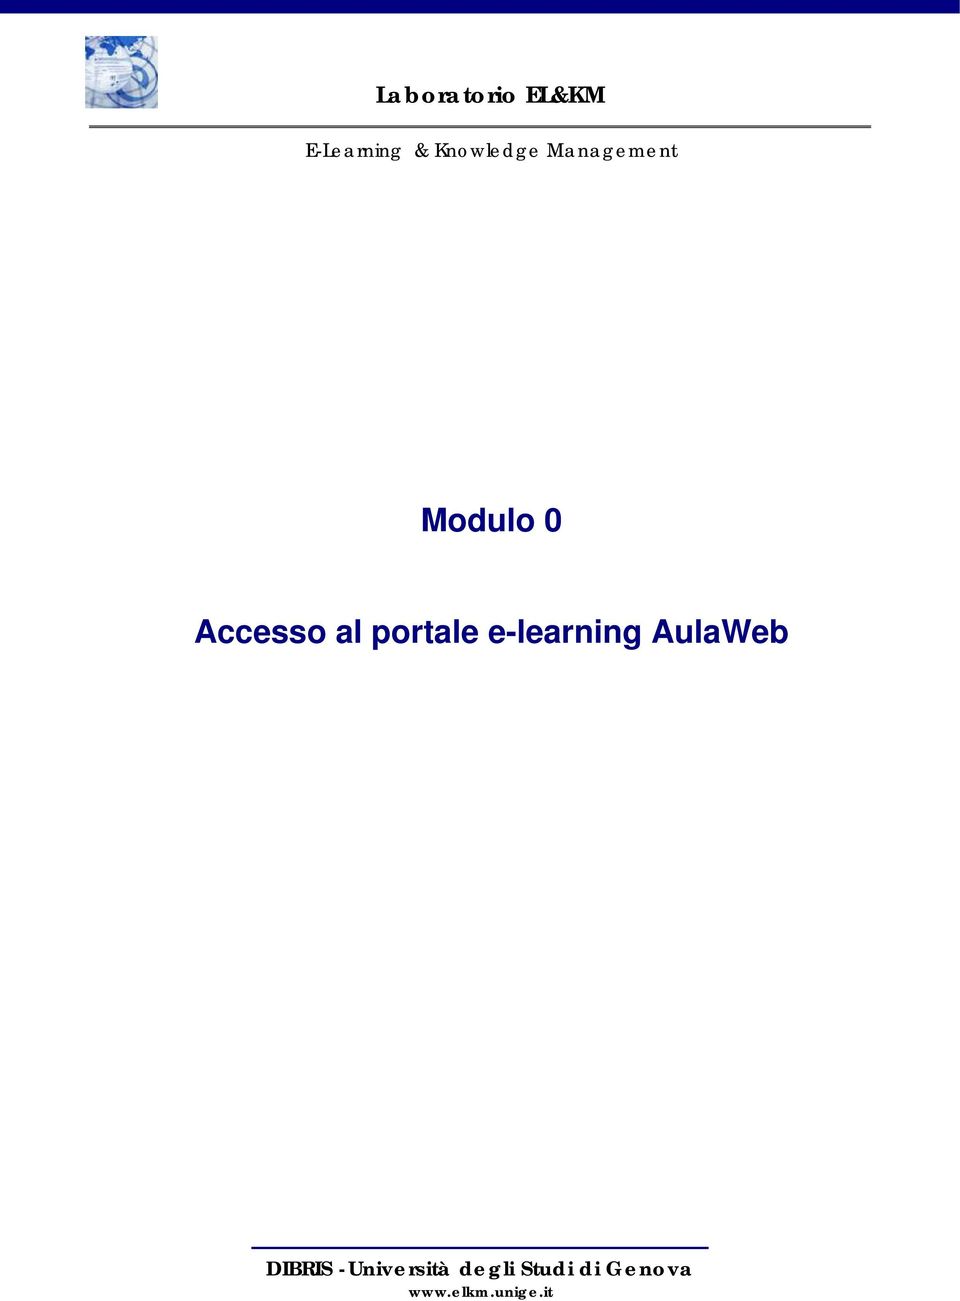 Accesso al portale e-learning